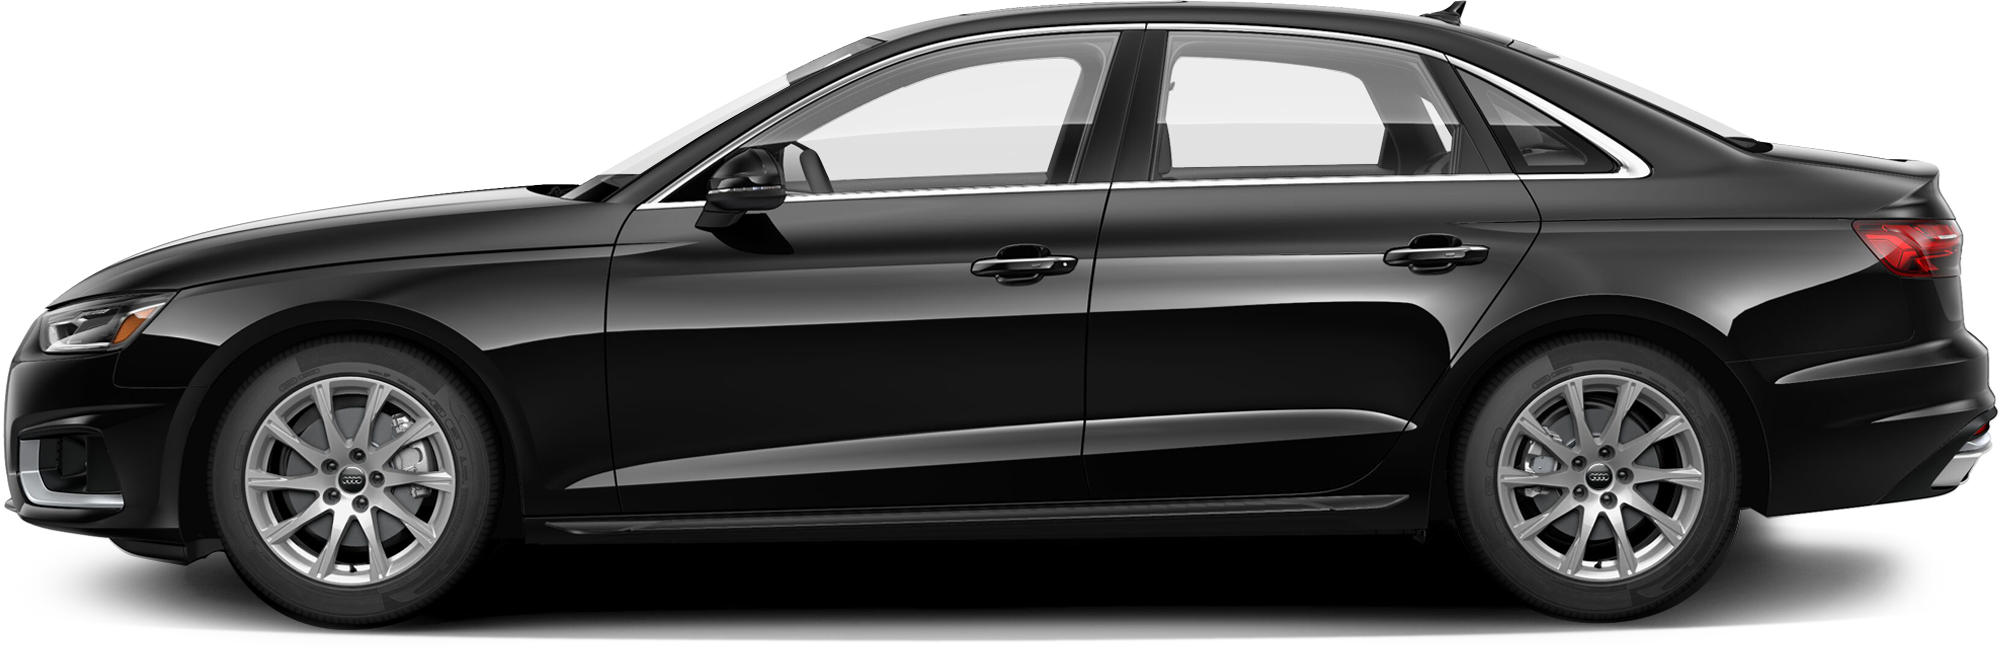 http://images.dealer.com/ddc/vehicles/2021/Audi/A4/Sedan/trim_40_Premium_0d609d/perspective/side-left/2021_24.png